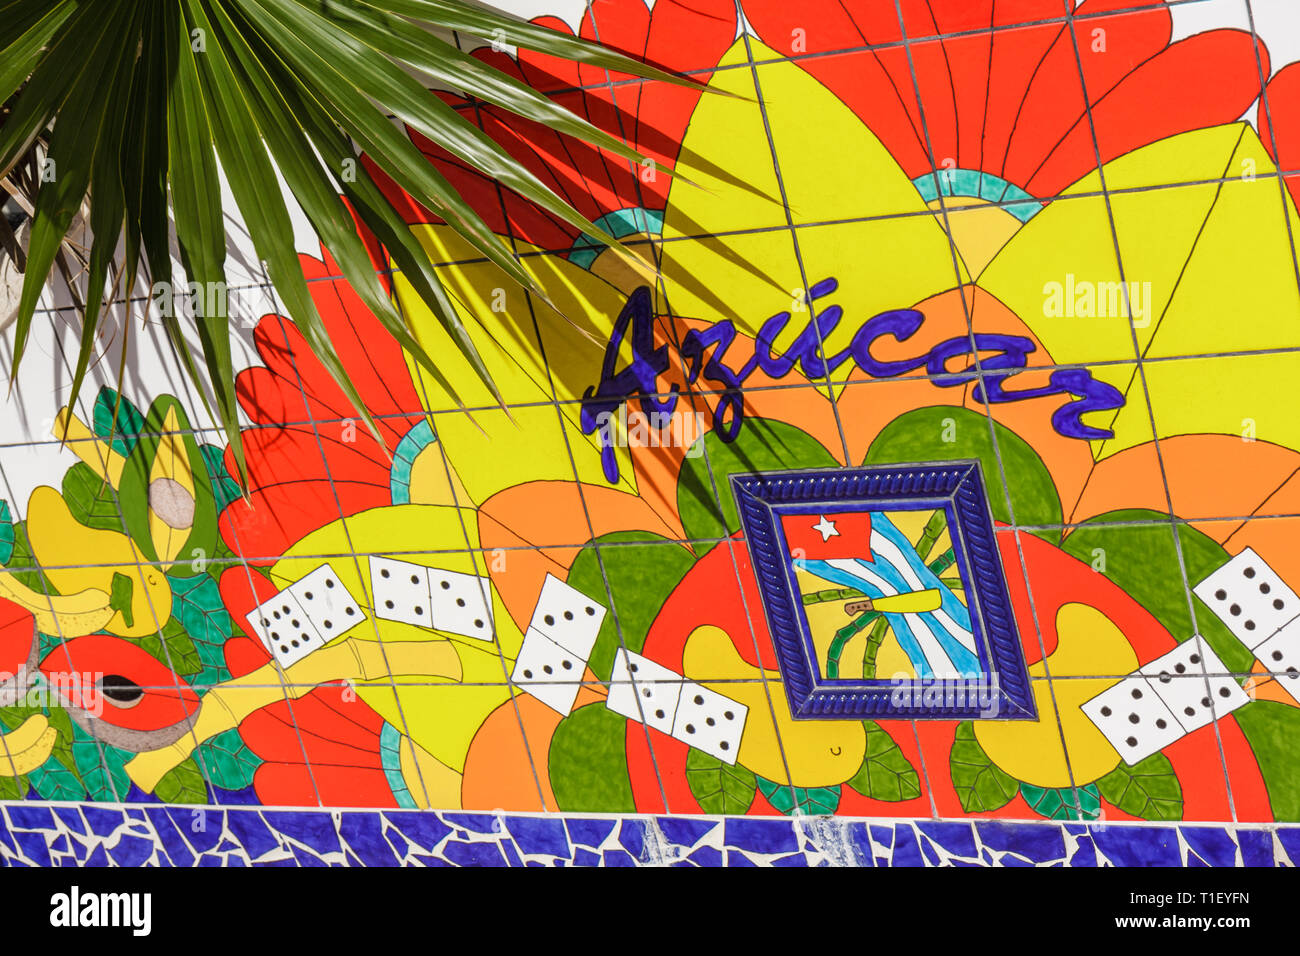 Miami Florida, Little Havana, Calle Ocho, Maximo Gomez Domino Park, Fliesen, Mosaik, bunt, blau, gelb, rot, bemalt, azucar, Zucker, spanische Sprache, zweisprachig, t Stockfoto